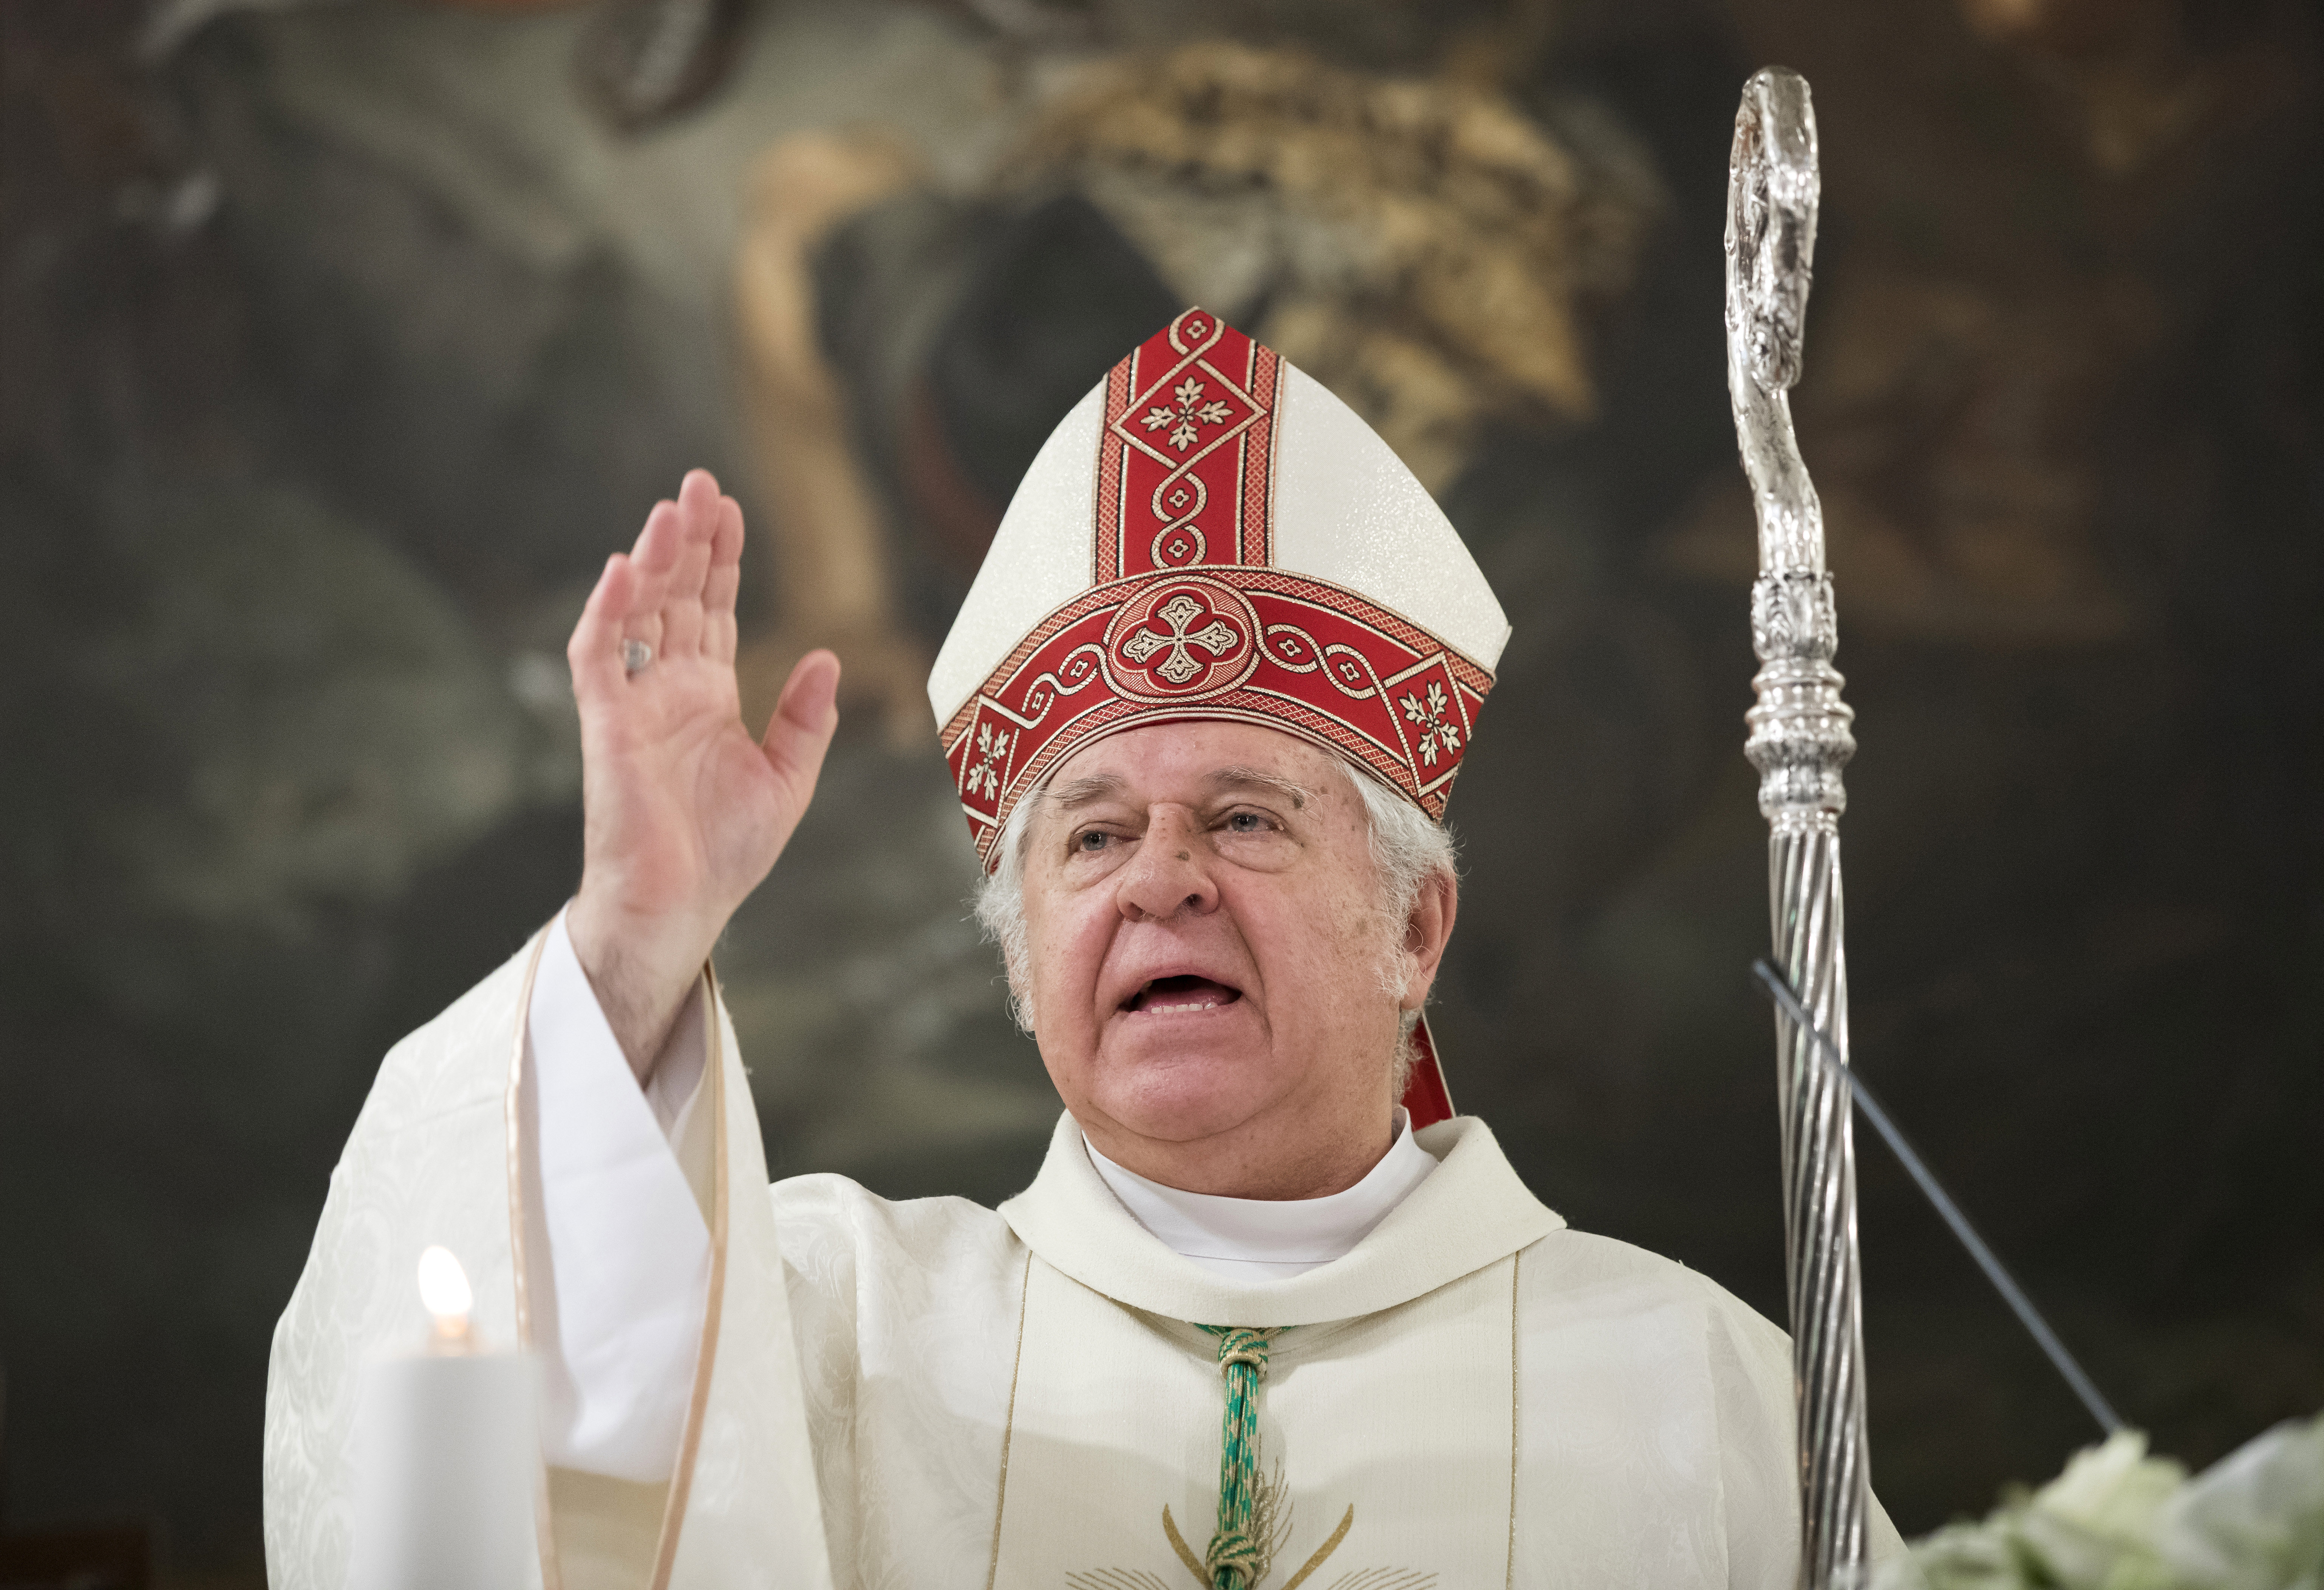 Hangfelvétel: a budapesti püspök az áldozat szemébe mondja, hogy őt nem érdeklik a molesztálási ügyek